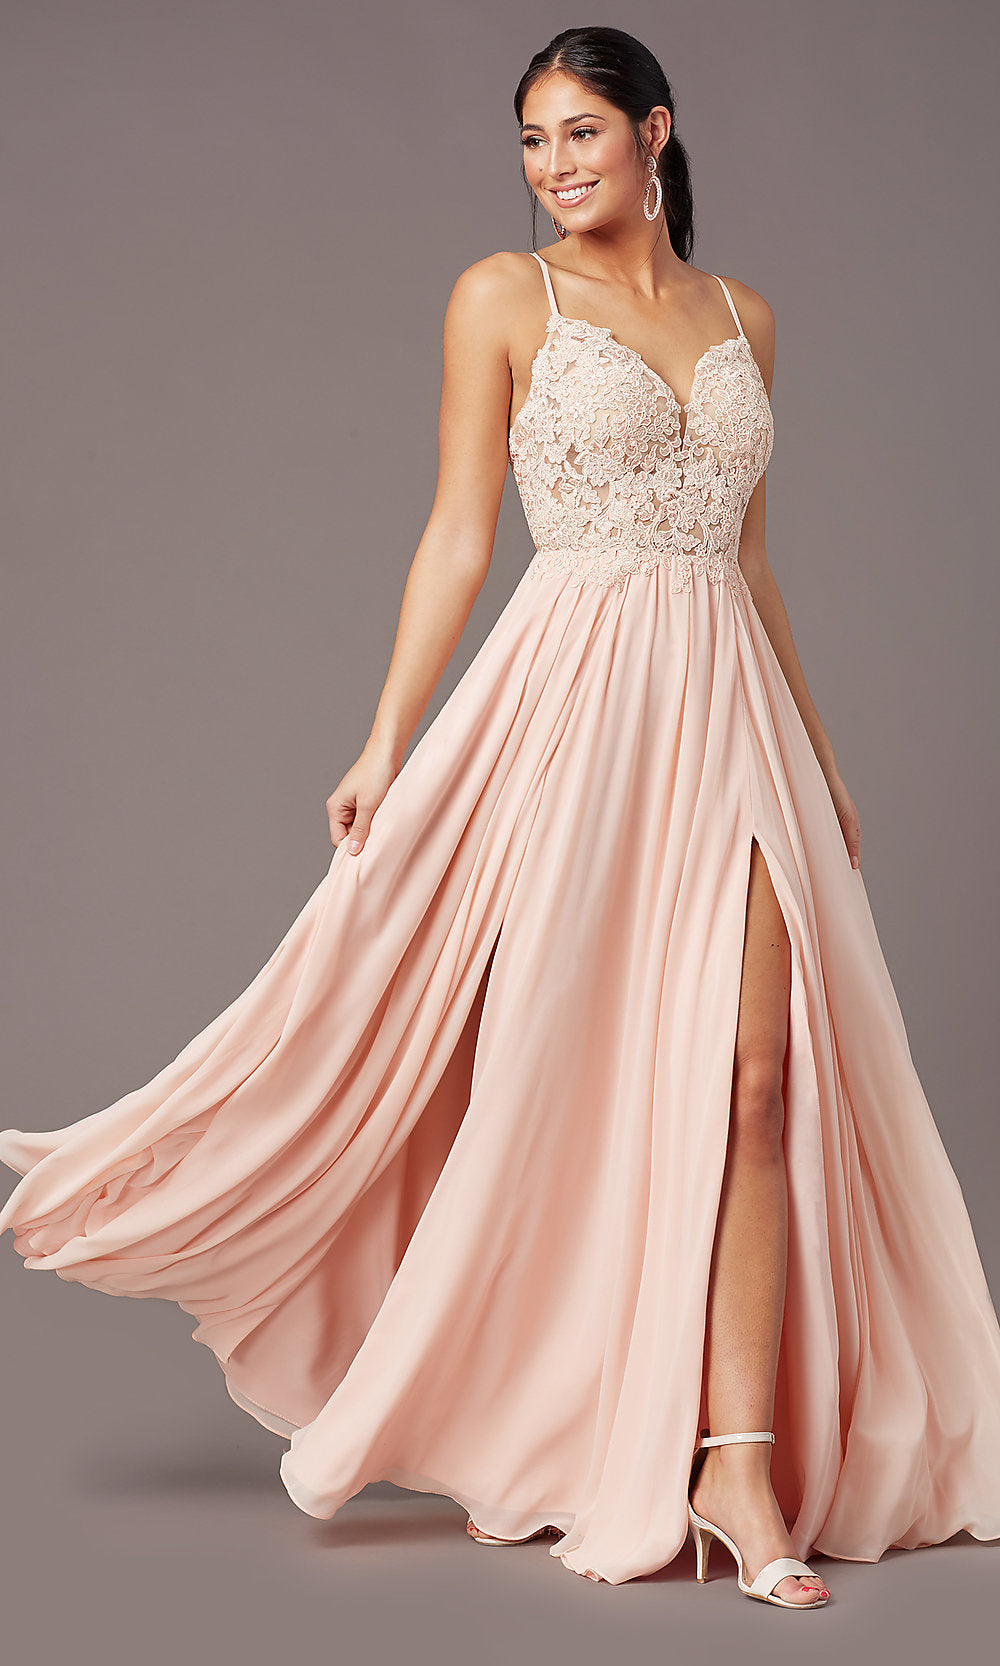 Dresses, Full Length Double Slit Dress